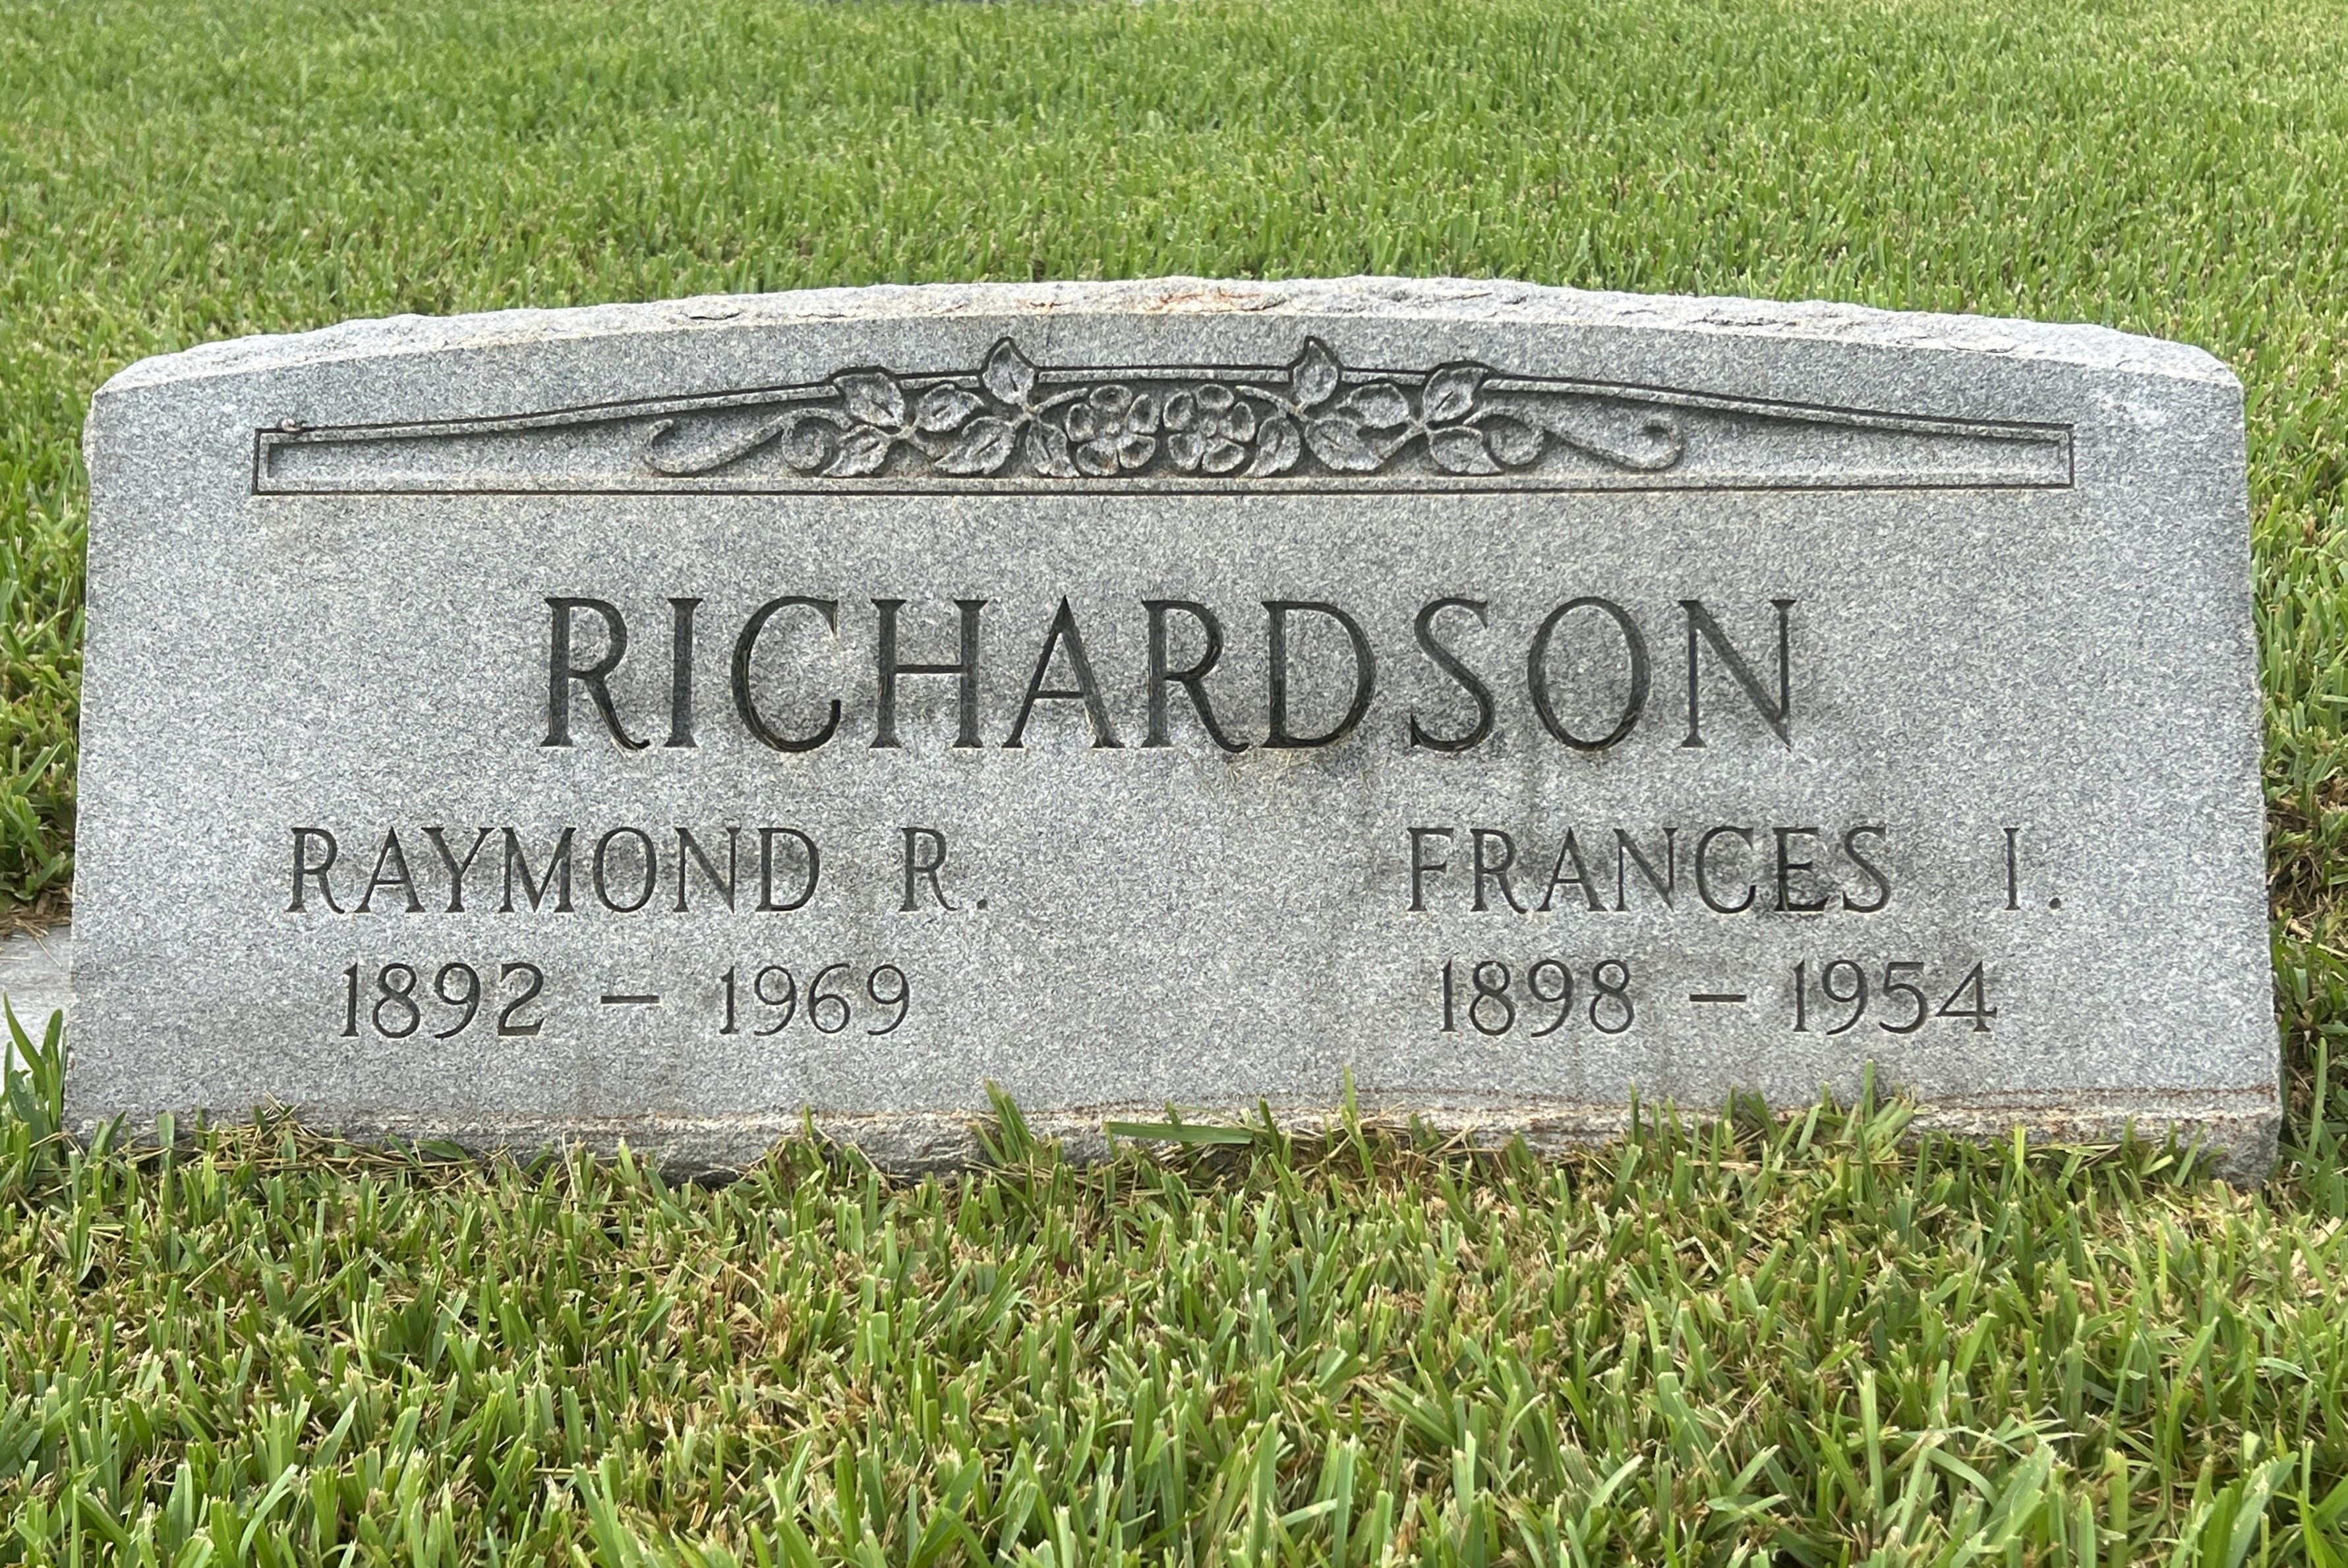 Frances I Richardson